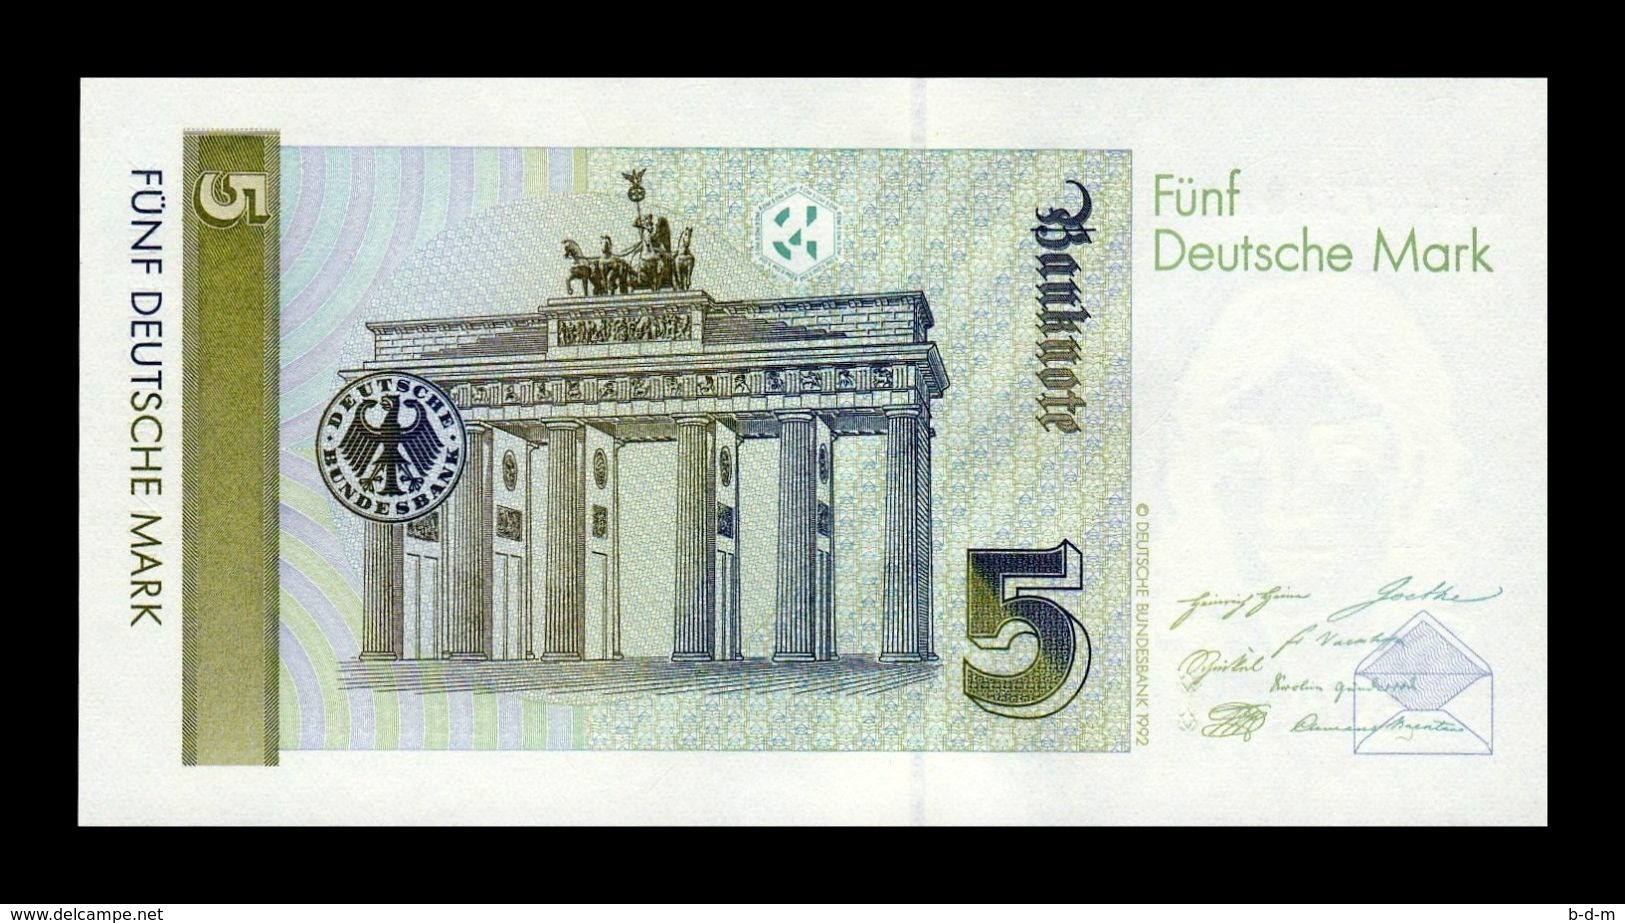 Alemania Germany Fed. Rep. 5 Deutsche Mark 1991 Pick 37 SC UNC - 5 Deutsche Mark